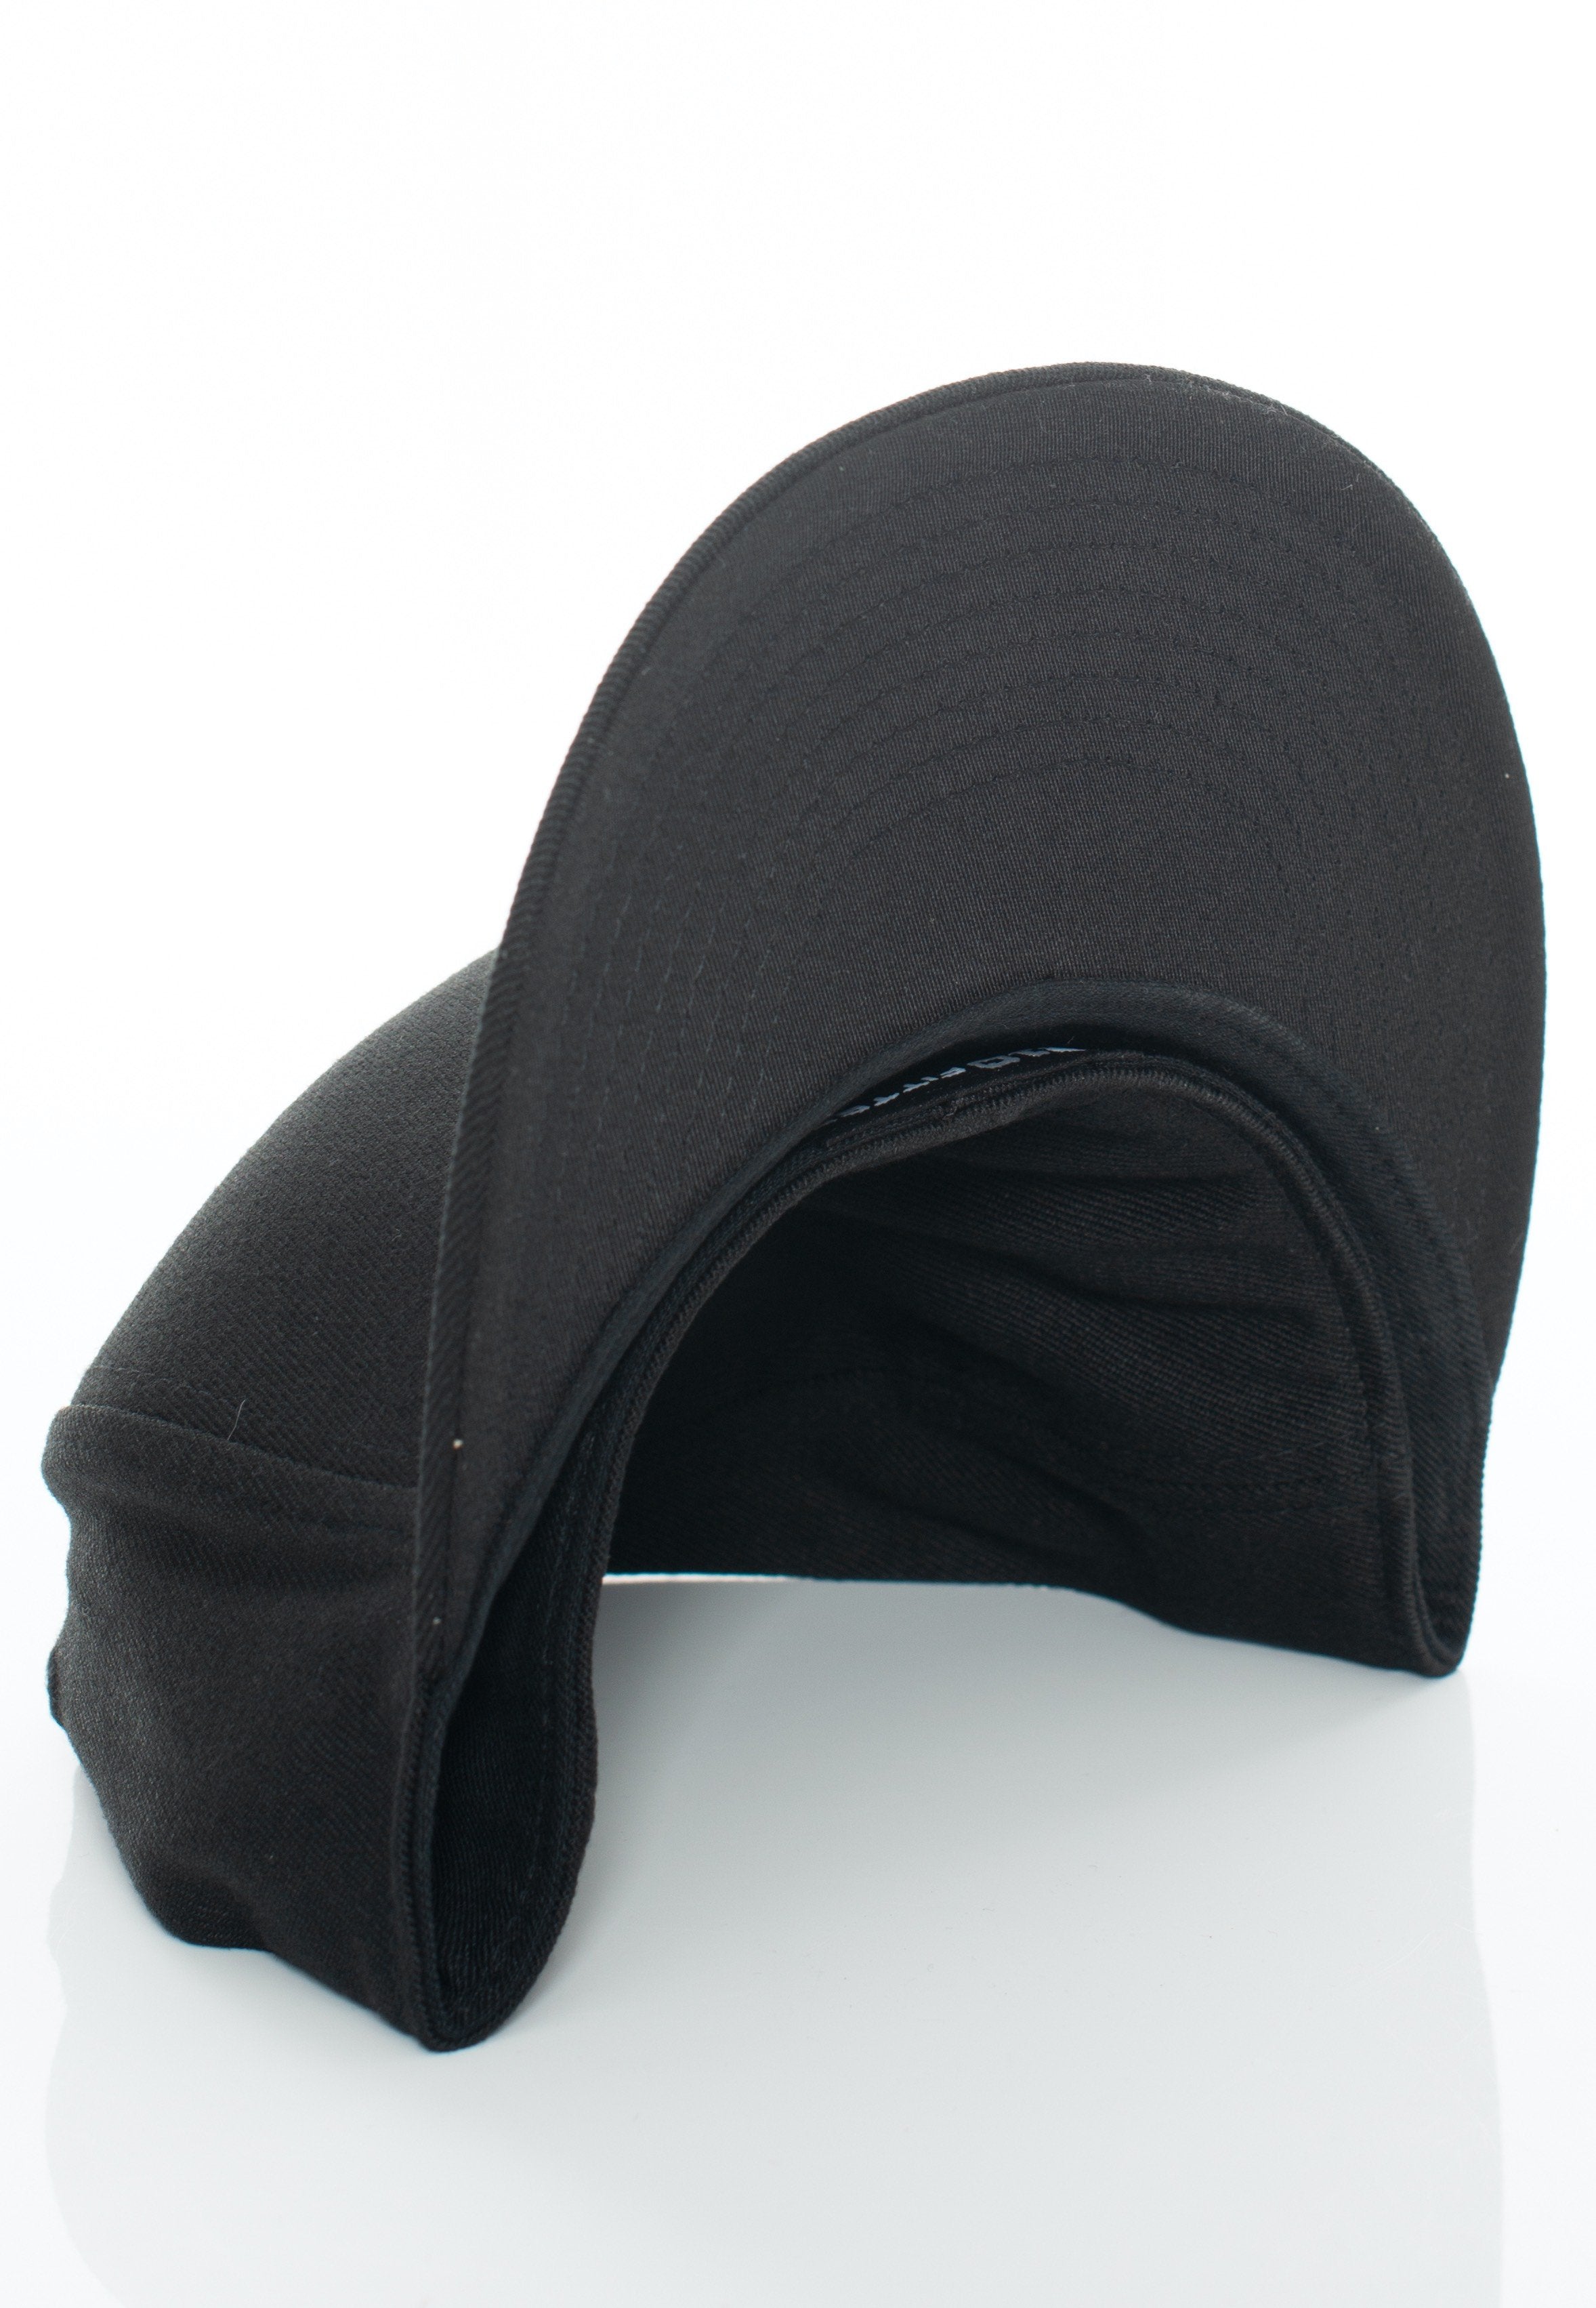 Flexfit - Premium 210 Fitted Black - Cap